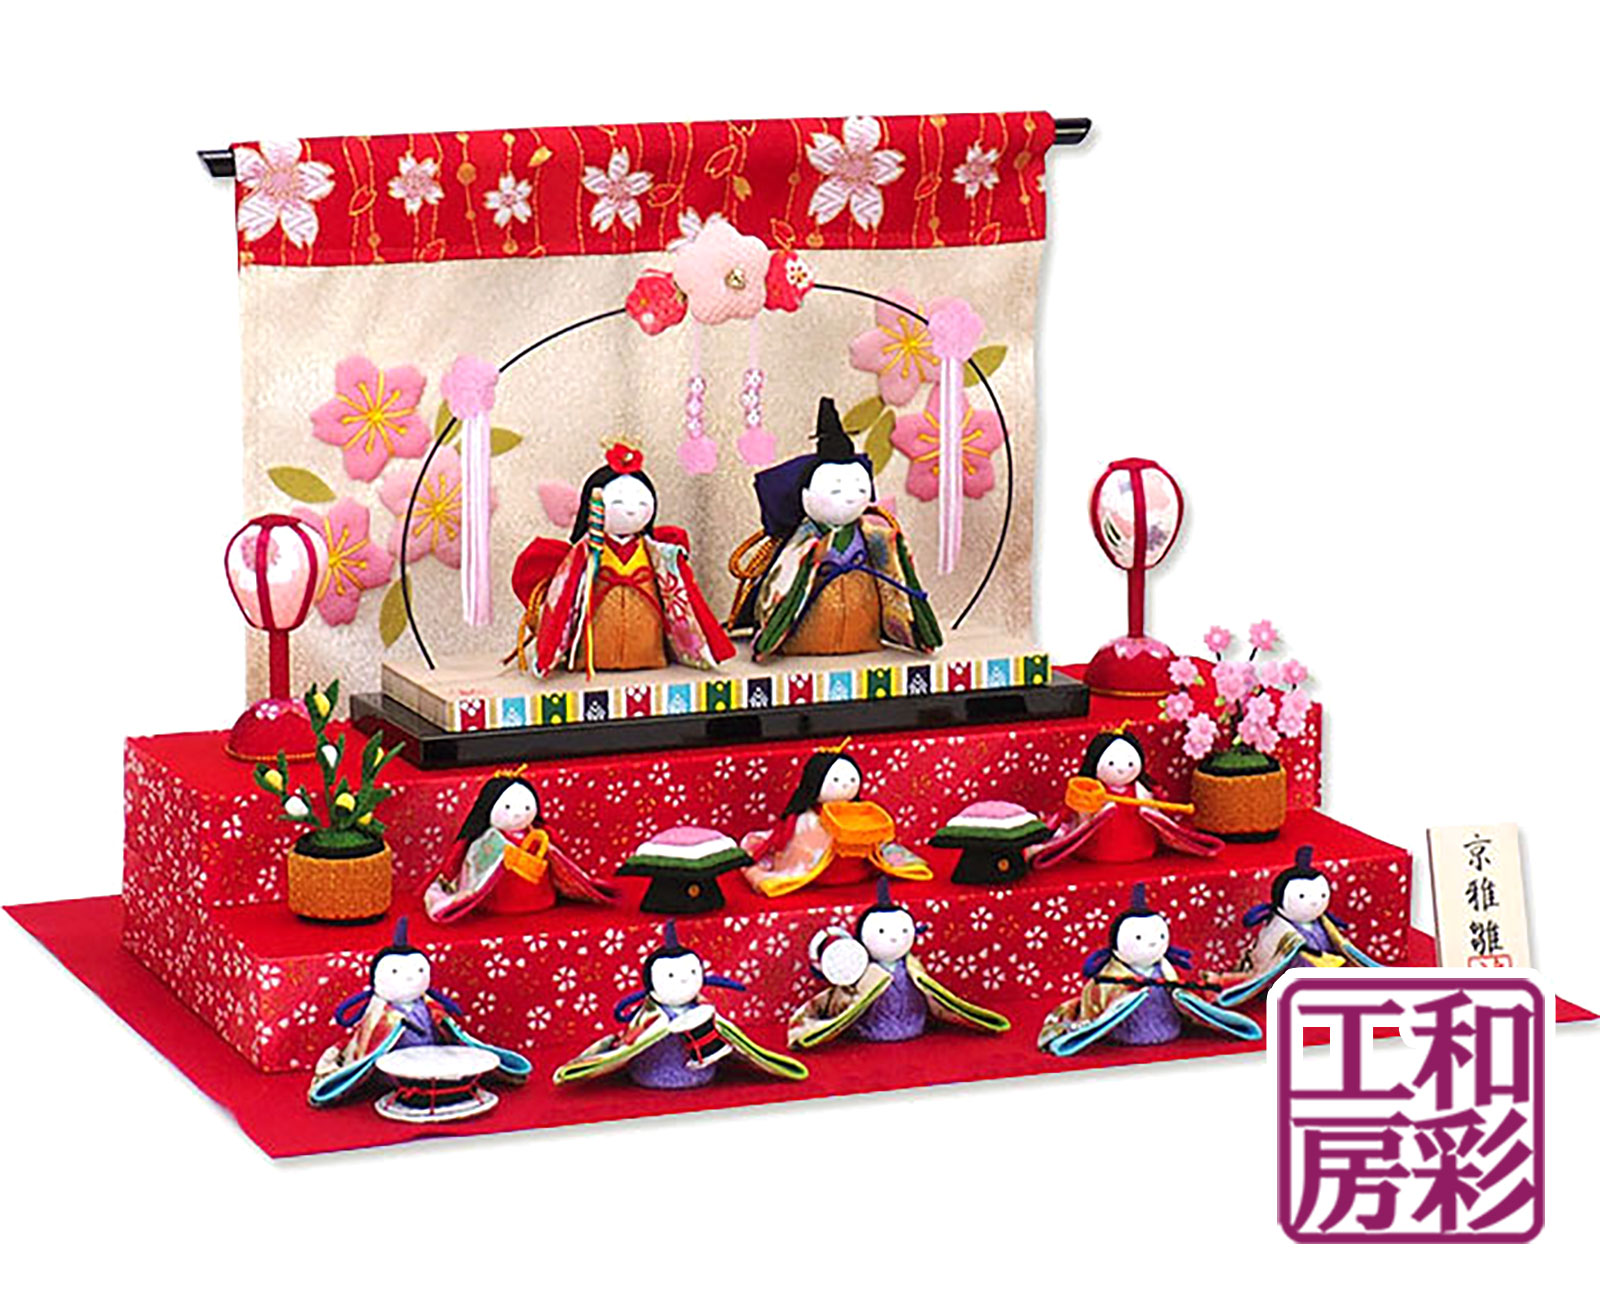  doll hinaningyo hinaningyou [ Sakura day peace .. blooming ....10 person . three step decoration ]rh459sa.. sama compact ryuukodou